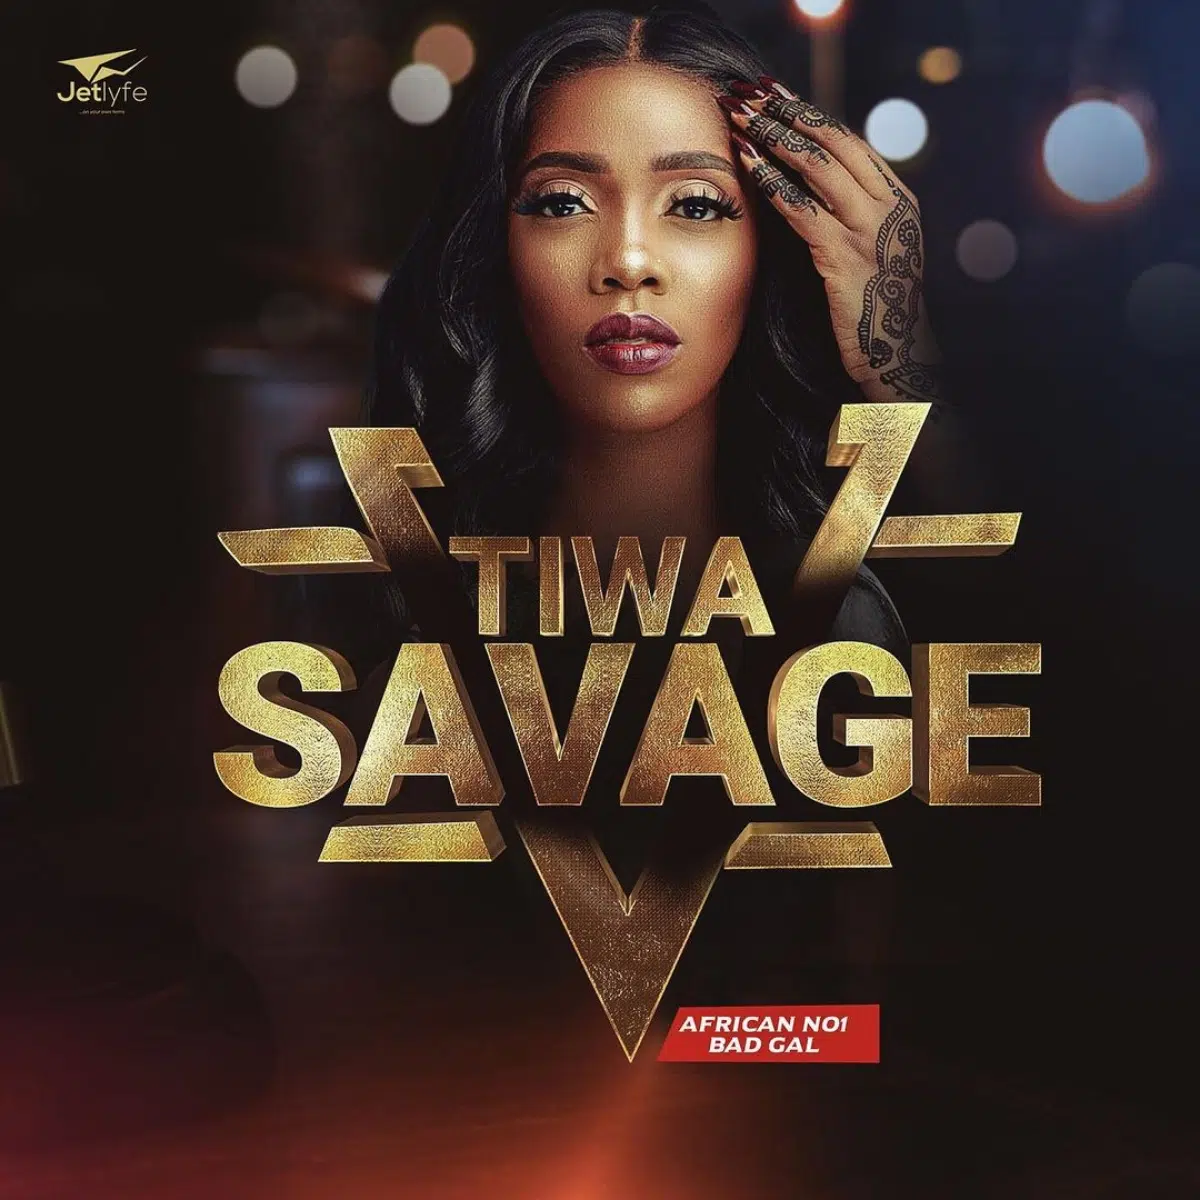 DOWNLOAD: Tiwa Savage Ft Don Jazzy – “Eminado” Video + Audio Mp3